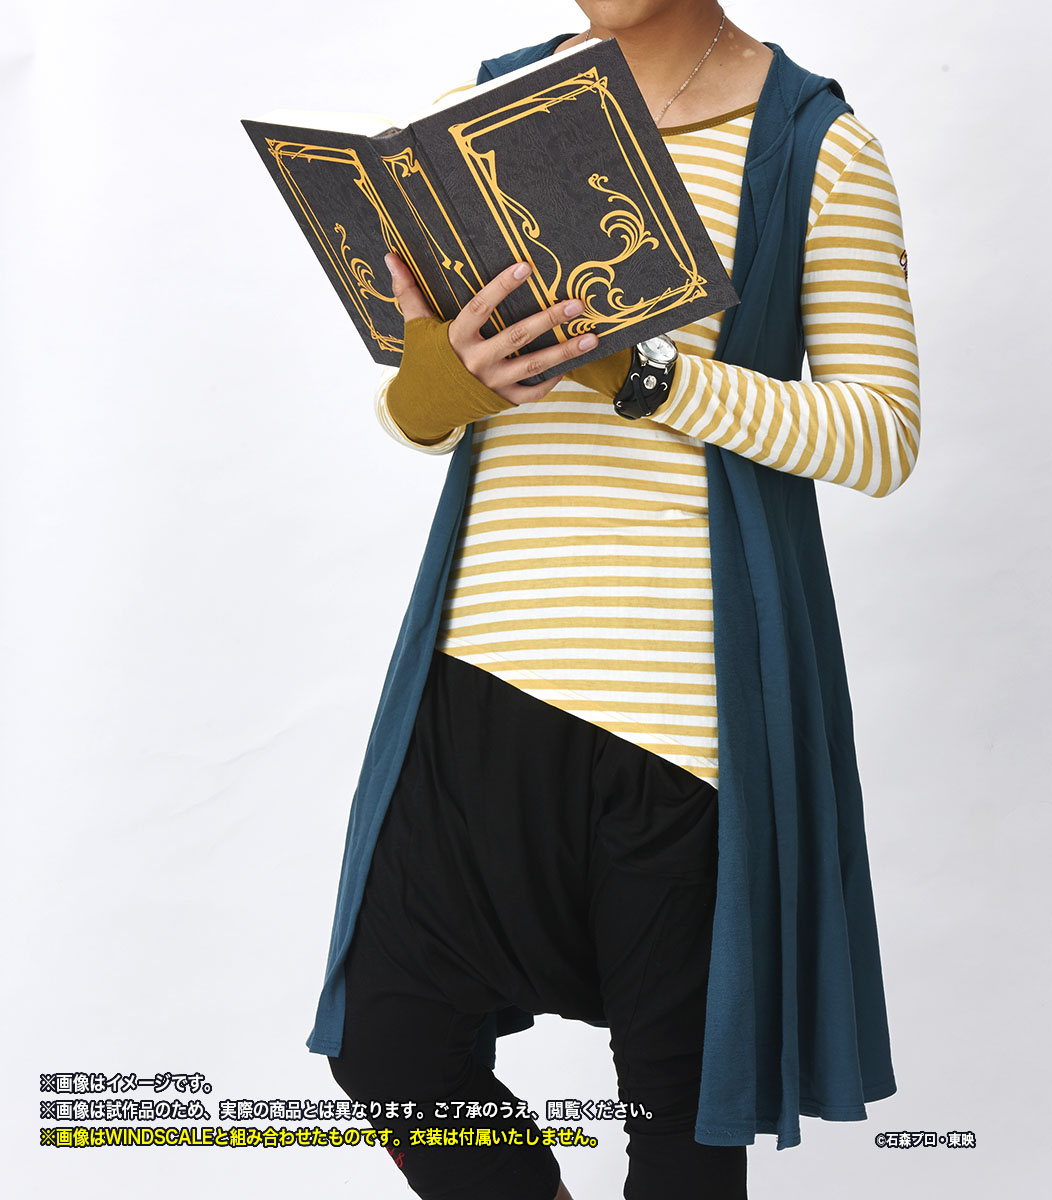 仮面ライダーW』菅田将暉演じるフィリップが持つ本が、究極のなりきり 